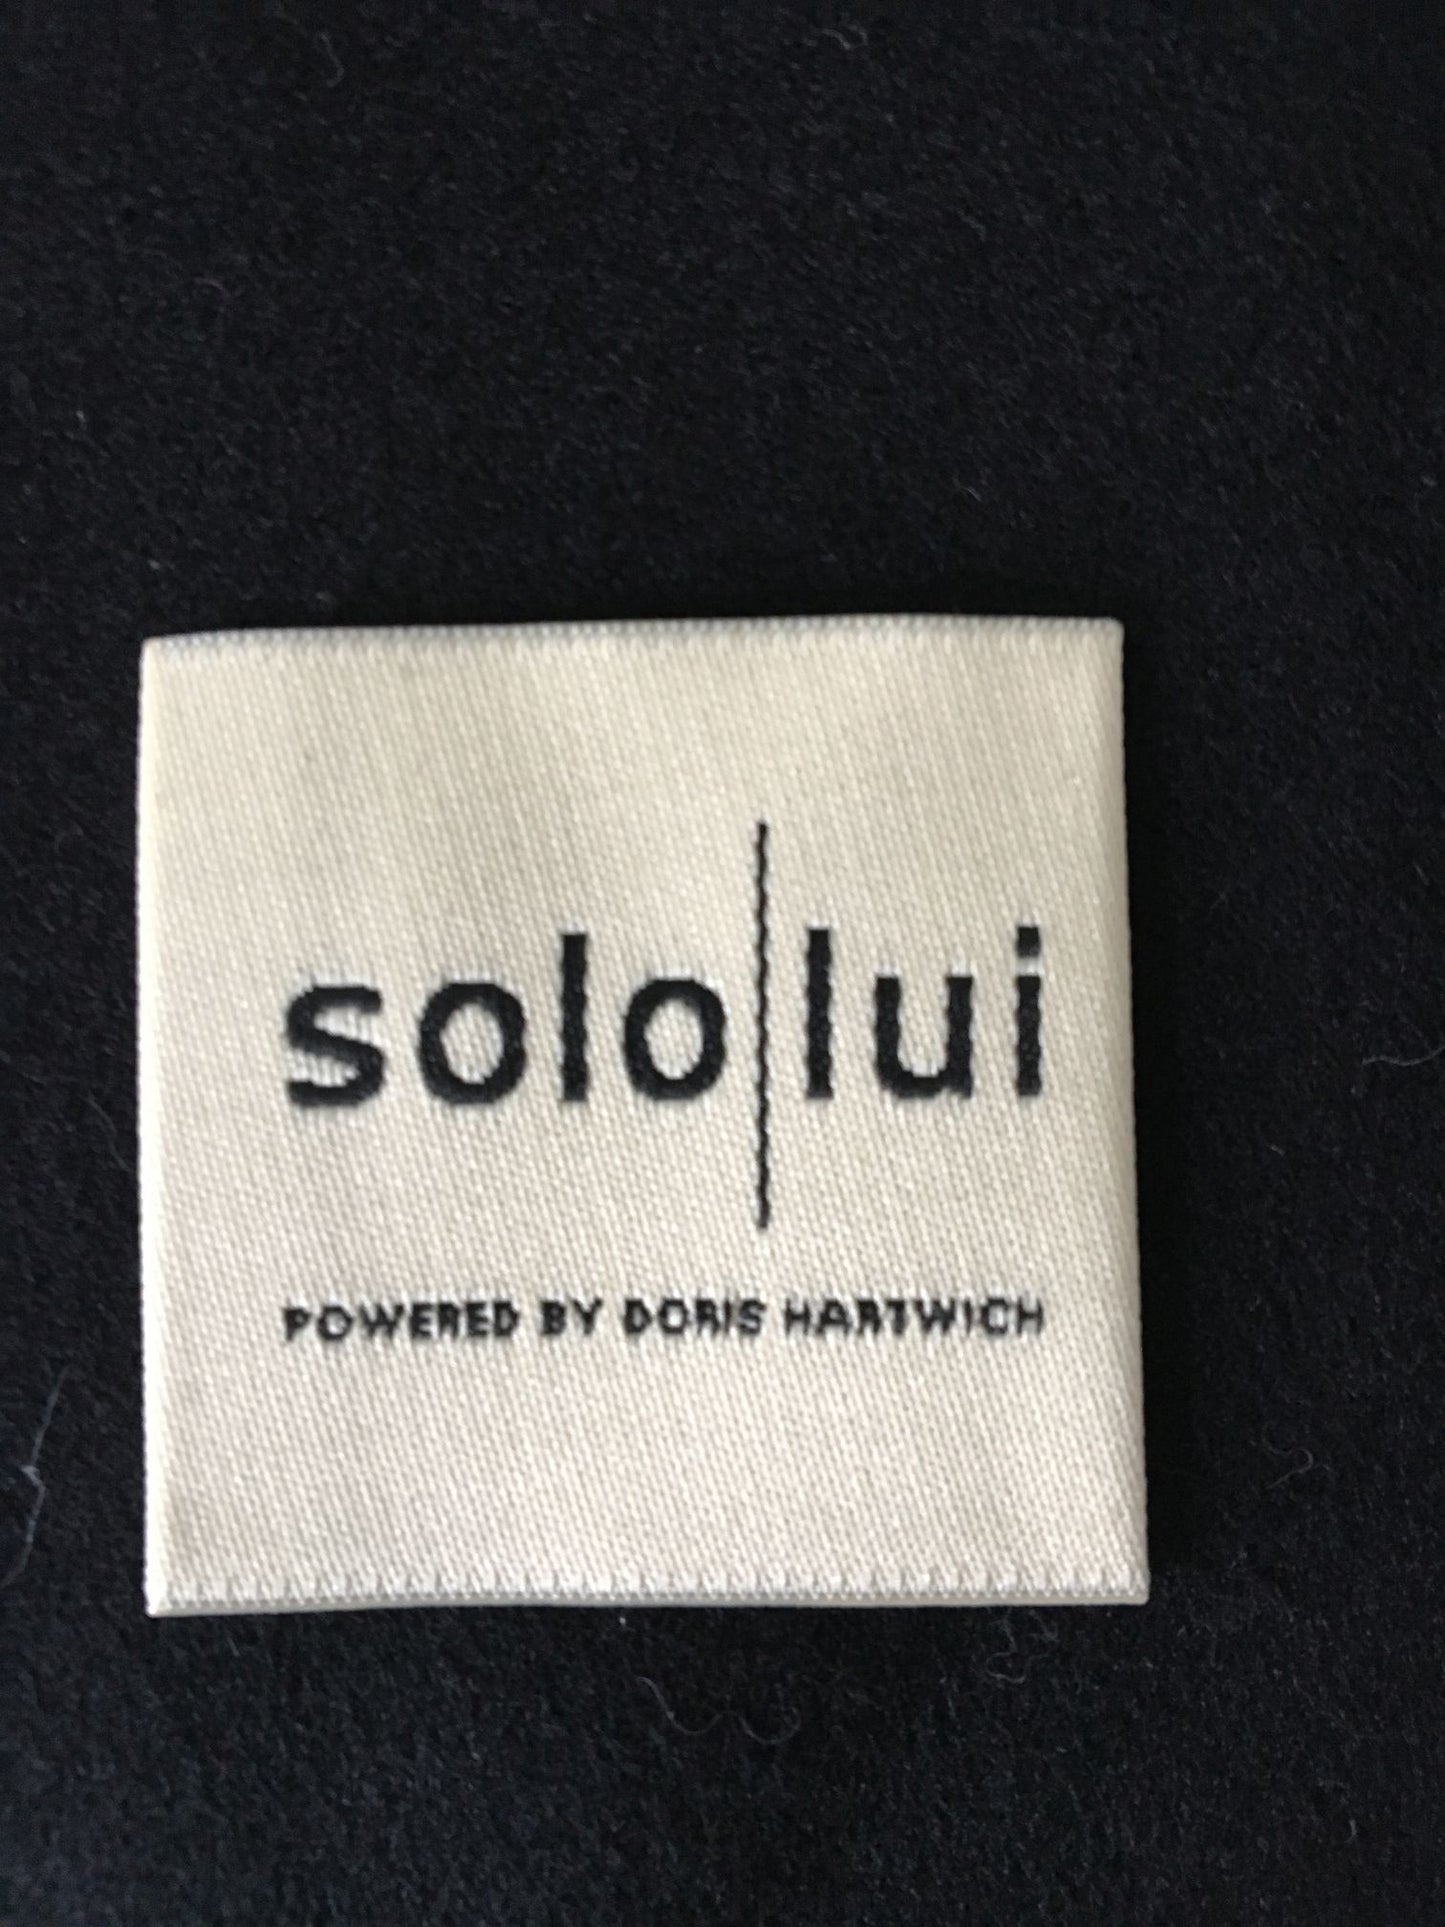 Hypnos - schwarzes Hemd mit bunten Druckern - von SOLO LUI